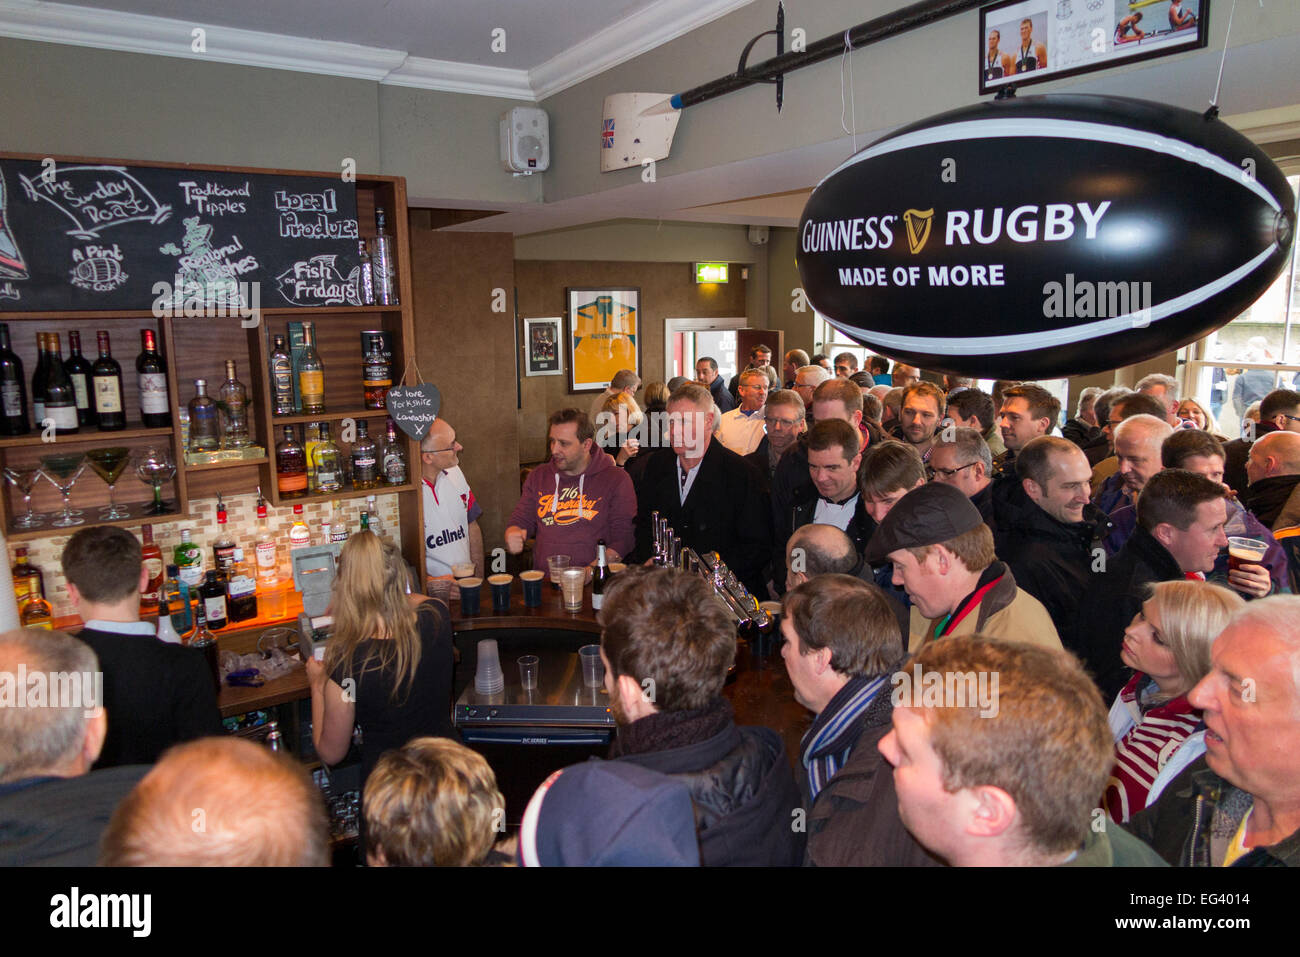 Rugby-Fan-Fans warten auf Barkeeper Mann Bardame / Mitarbeiter beschäftigt The Albany Pub / public House. Twickenham UK; Beliebte Spieltagen. Stockfoto